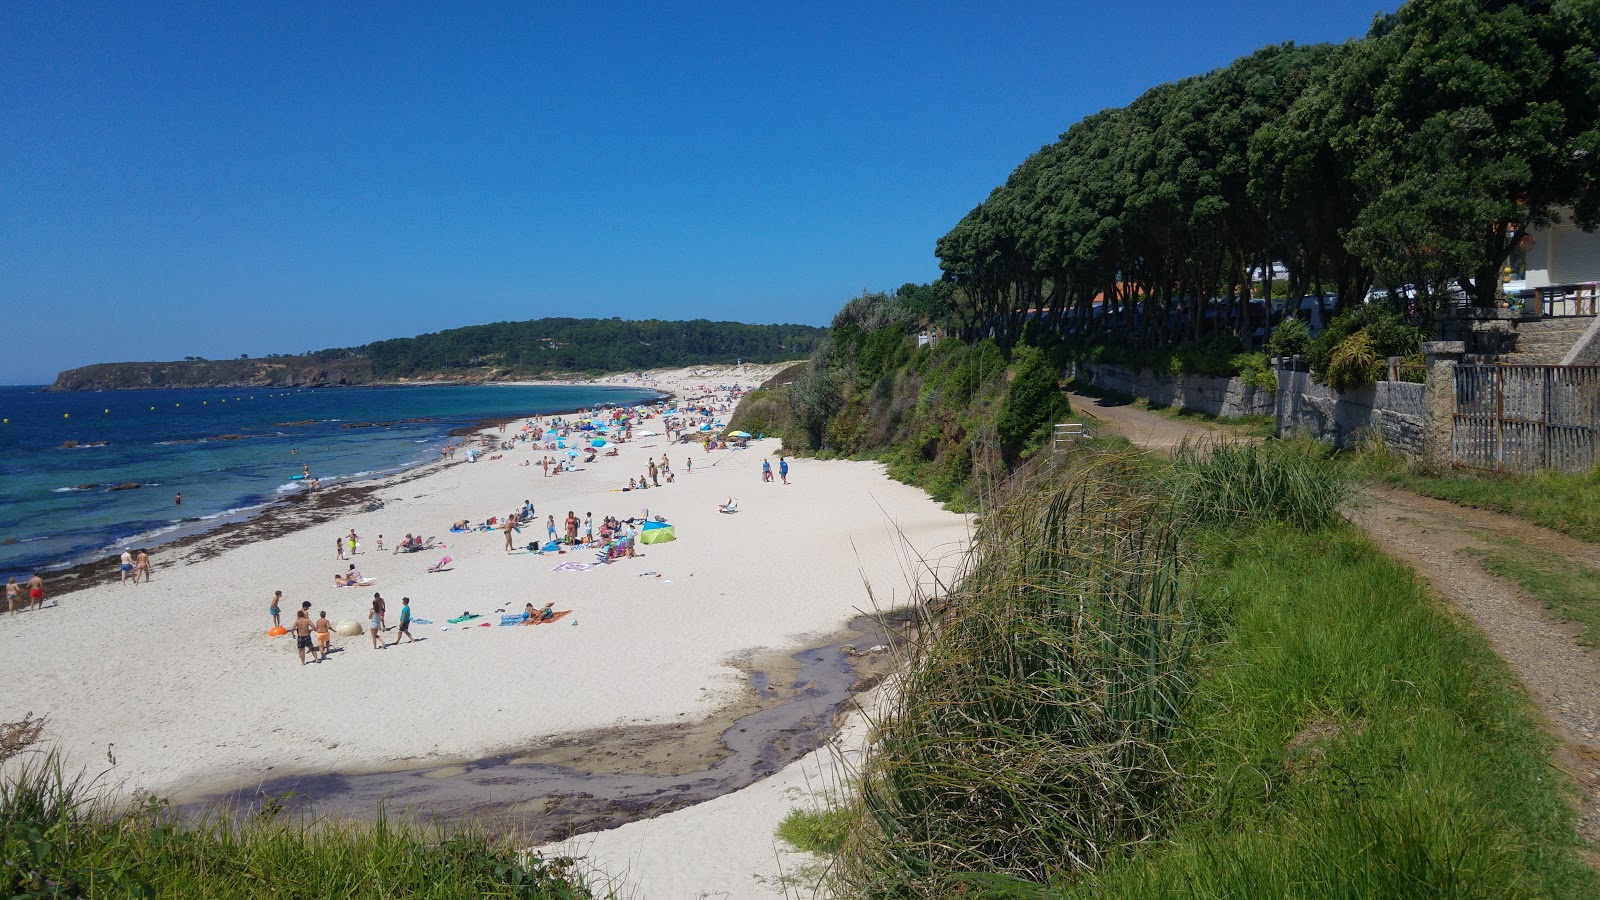 Zdjęcie Pragueira beach - popularne miejsce wśród znawców relaksu